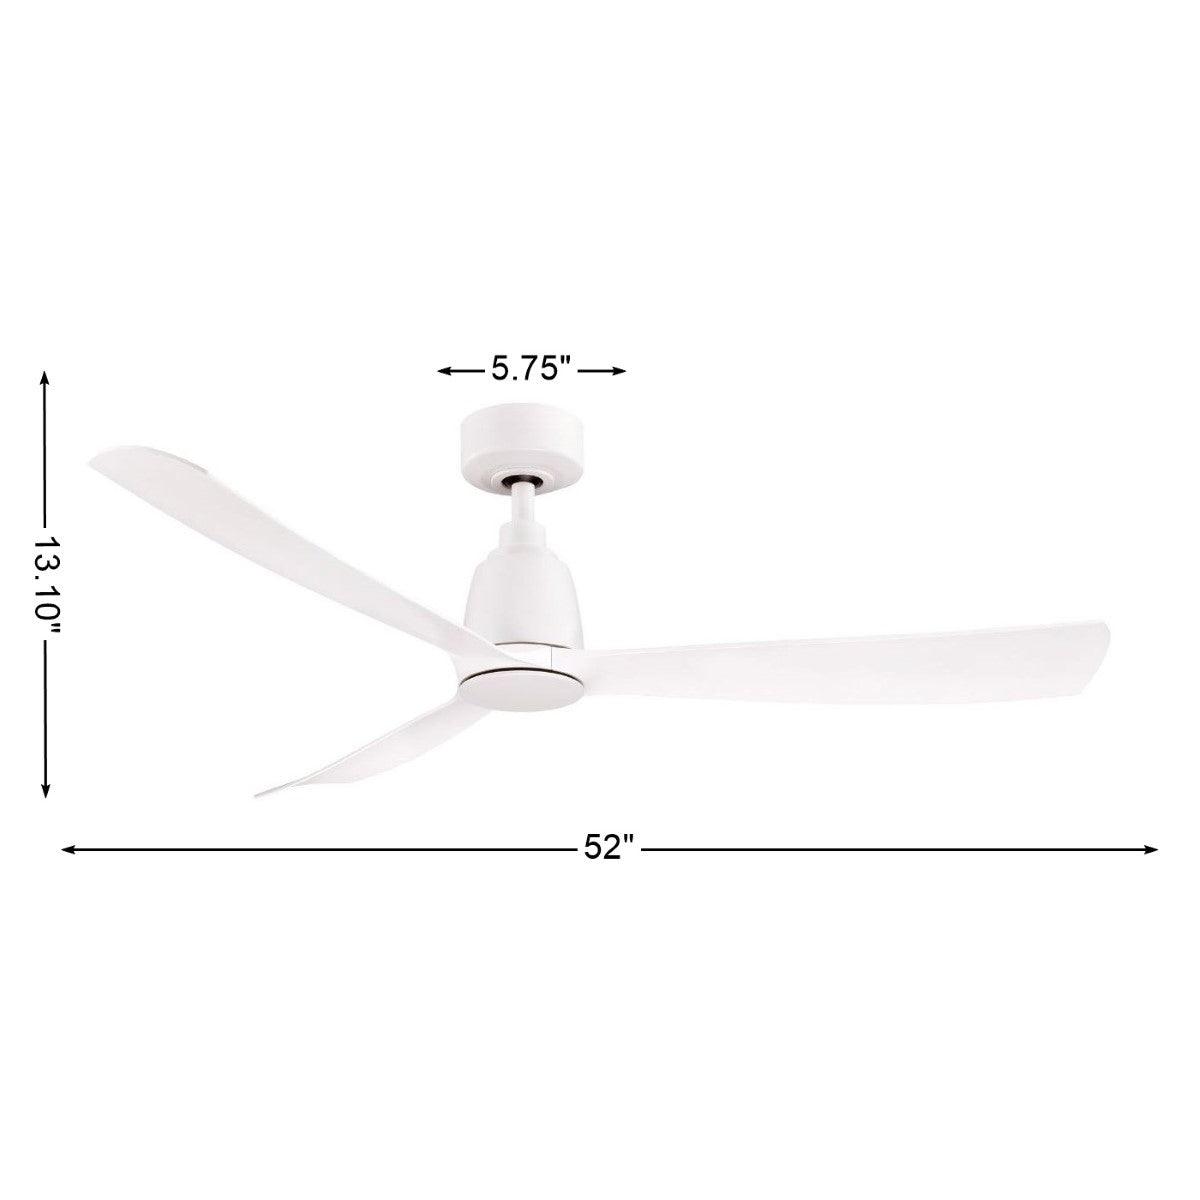 Kute 52 Inch Propeller Indoor/Outdoor Ceiling Fan With Remote, DC Motor